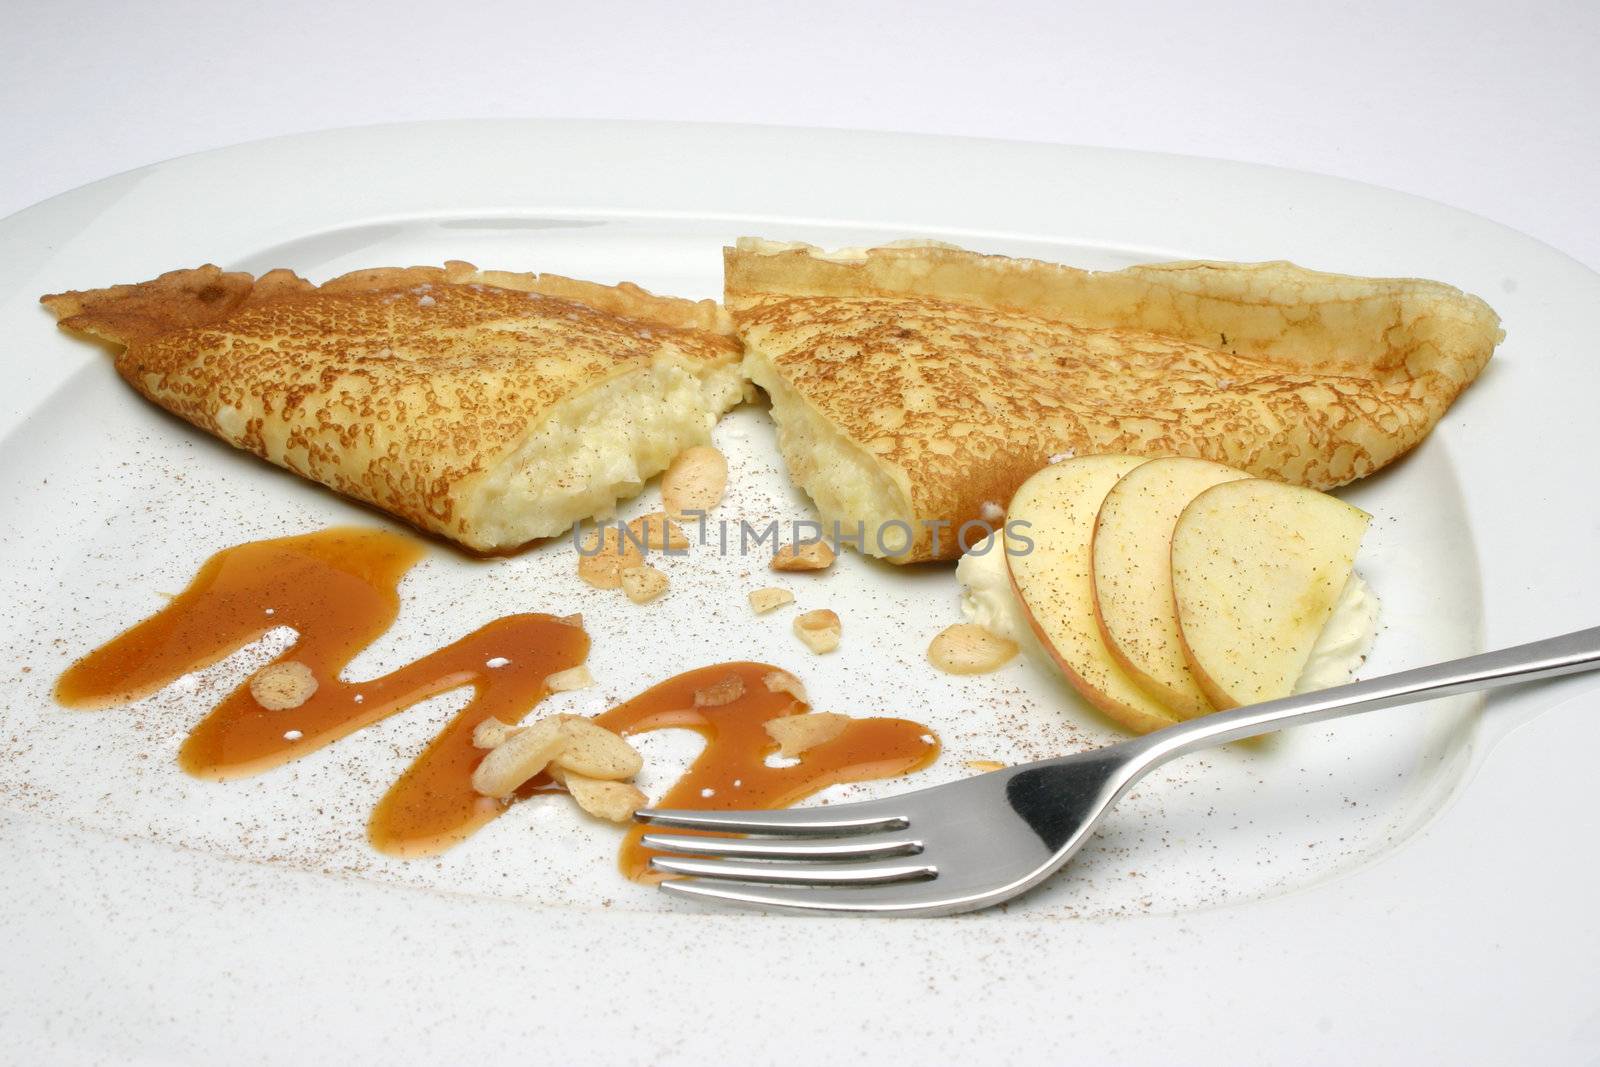 sweet crepe served in plate for desert







honey, sweet, crepe, apple, plate, fork, breakfast, desert, food